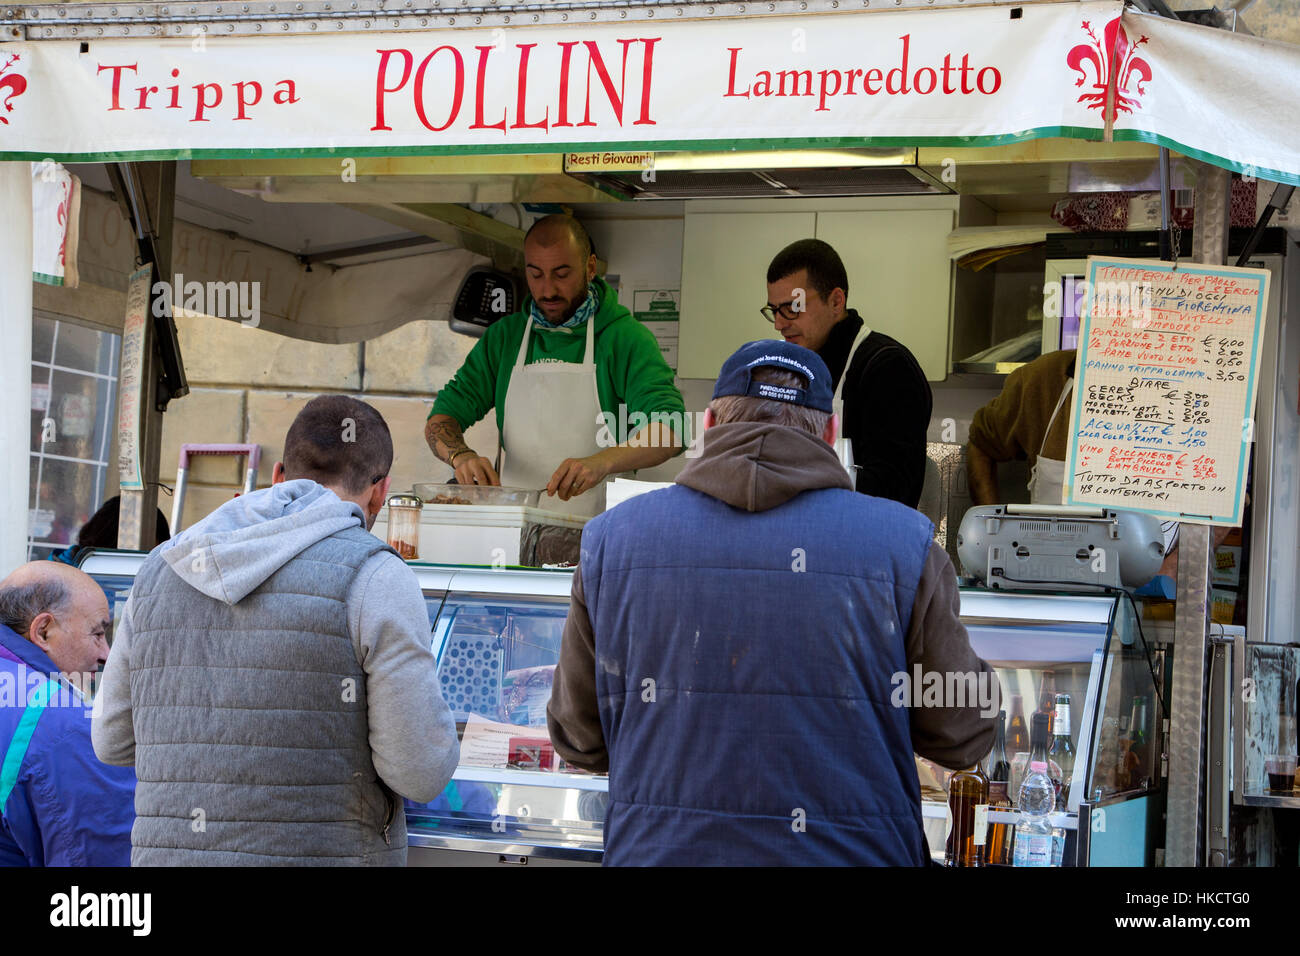 Les clients en attente d'être servi dans un stand qui vend des petits pains de tripes connu comme lampredotto à Florence Italie Banque D'Images